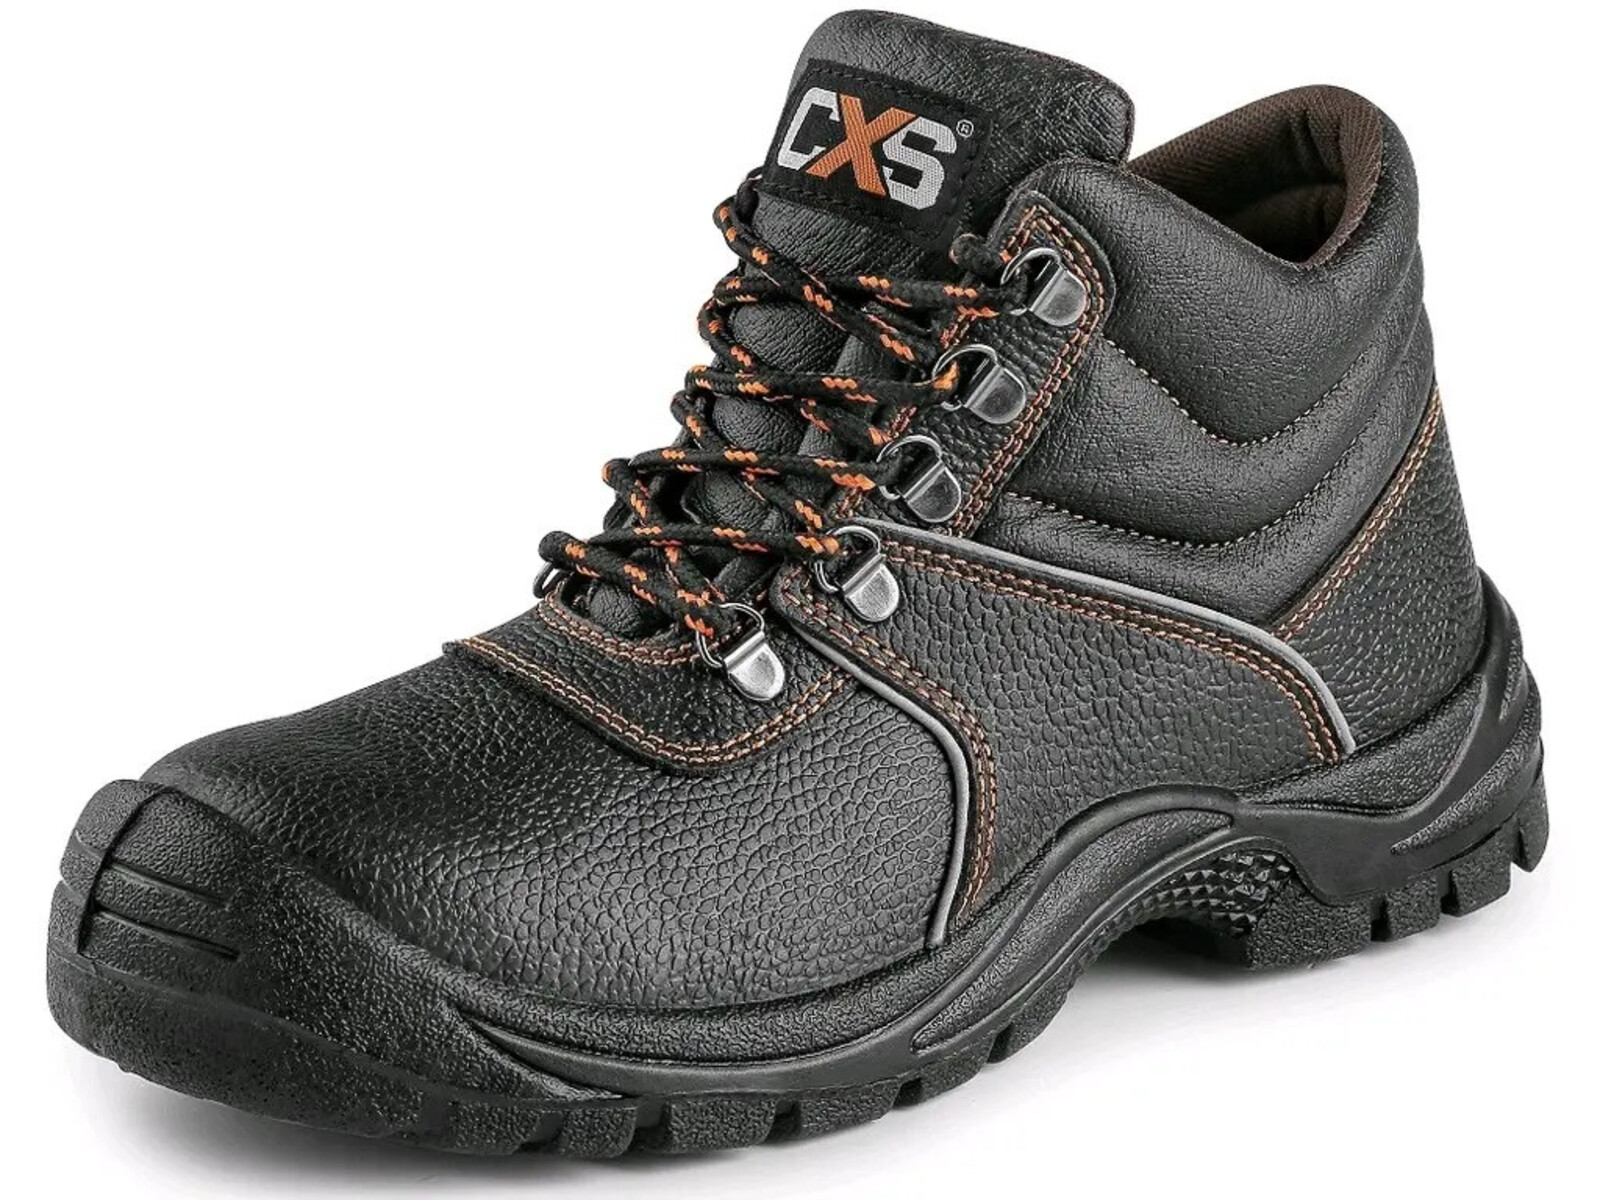 Bezpečnostná členková obuv CXS Stone Marble S2 SRC - veľkosť: 47, farba: čierna/oranžová